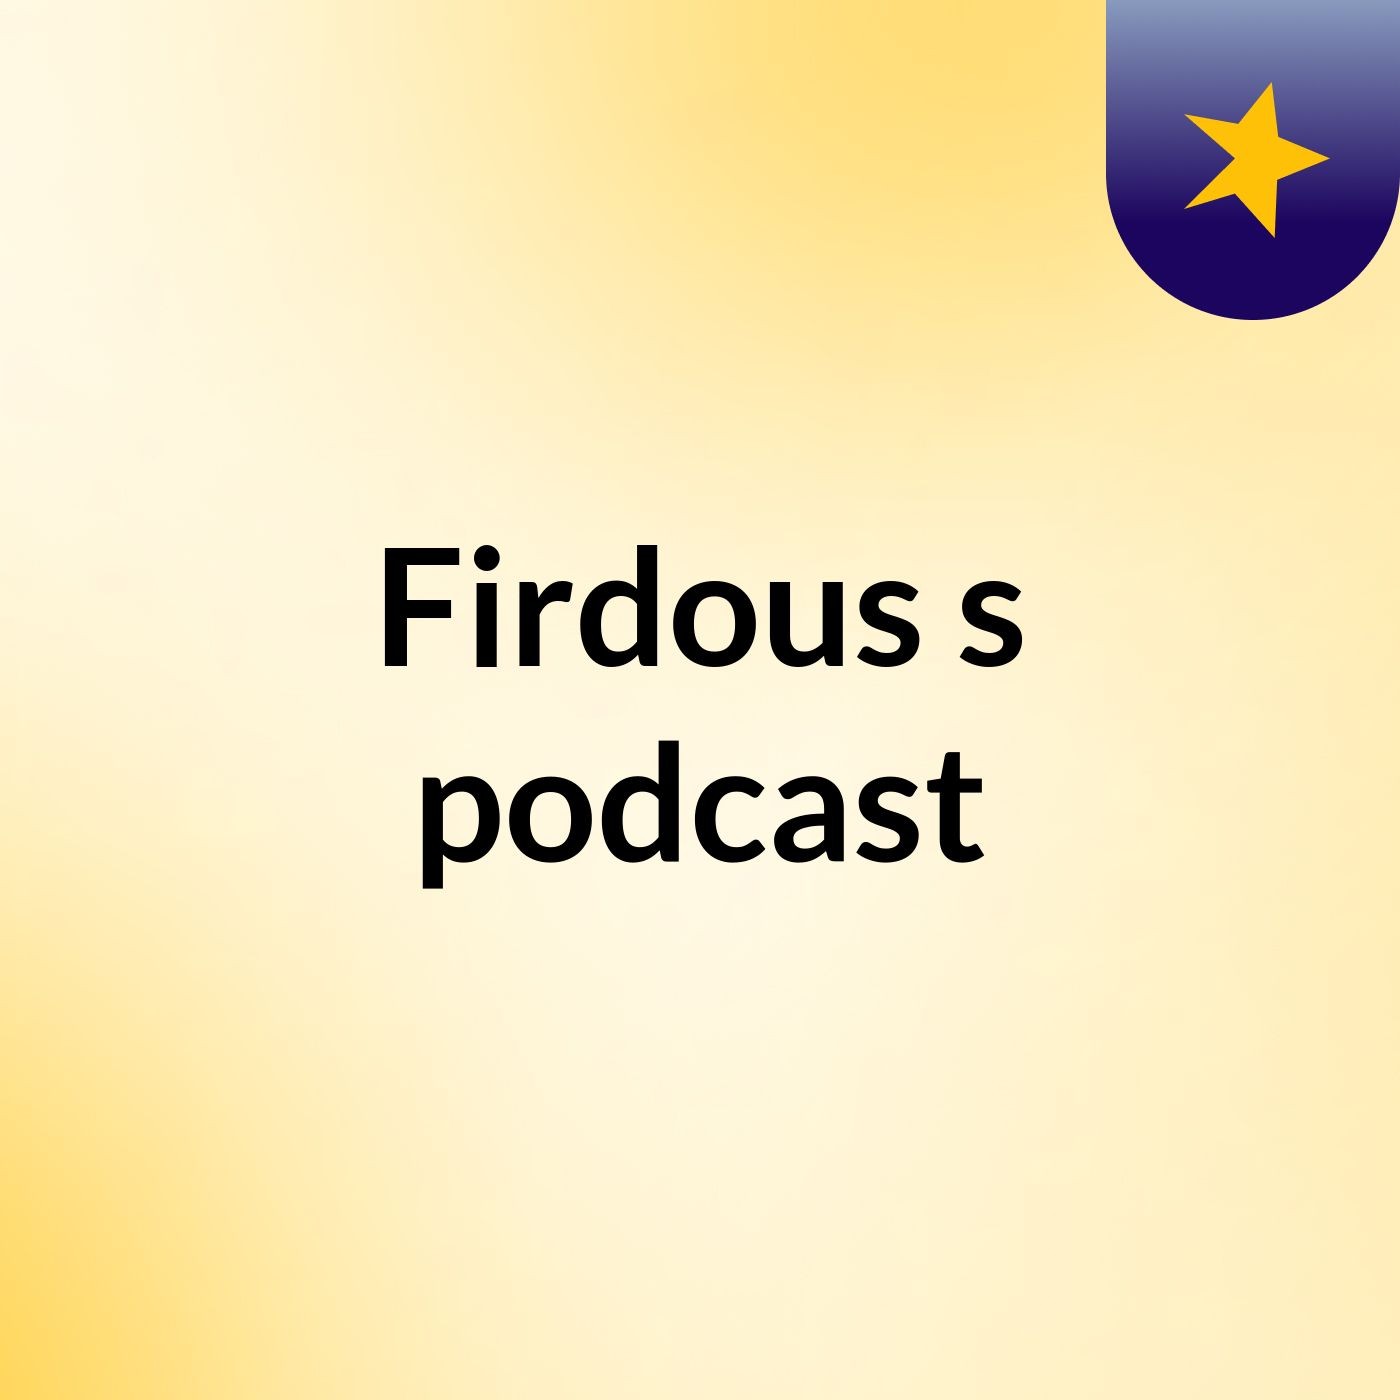 Firdous's podcast